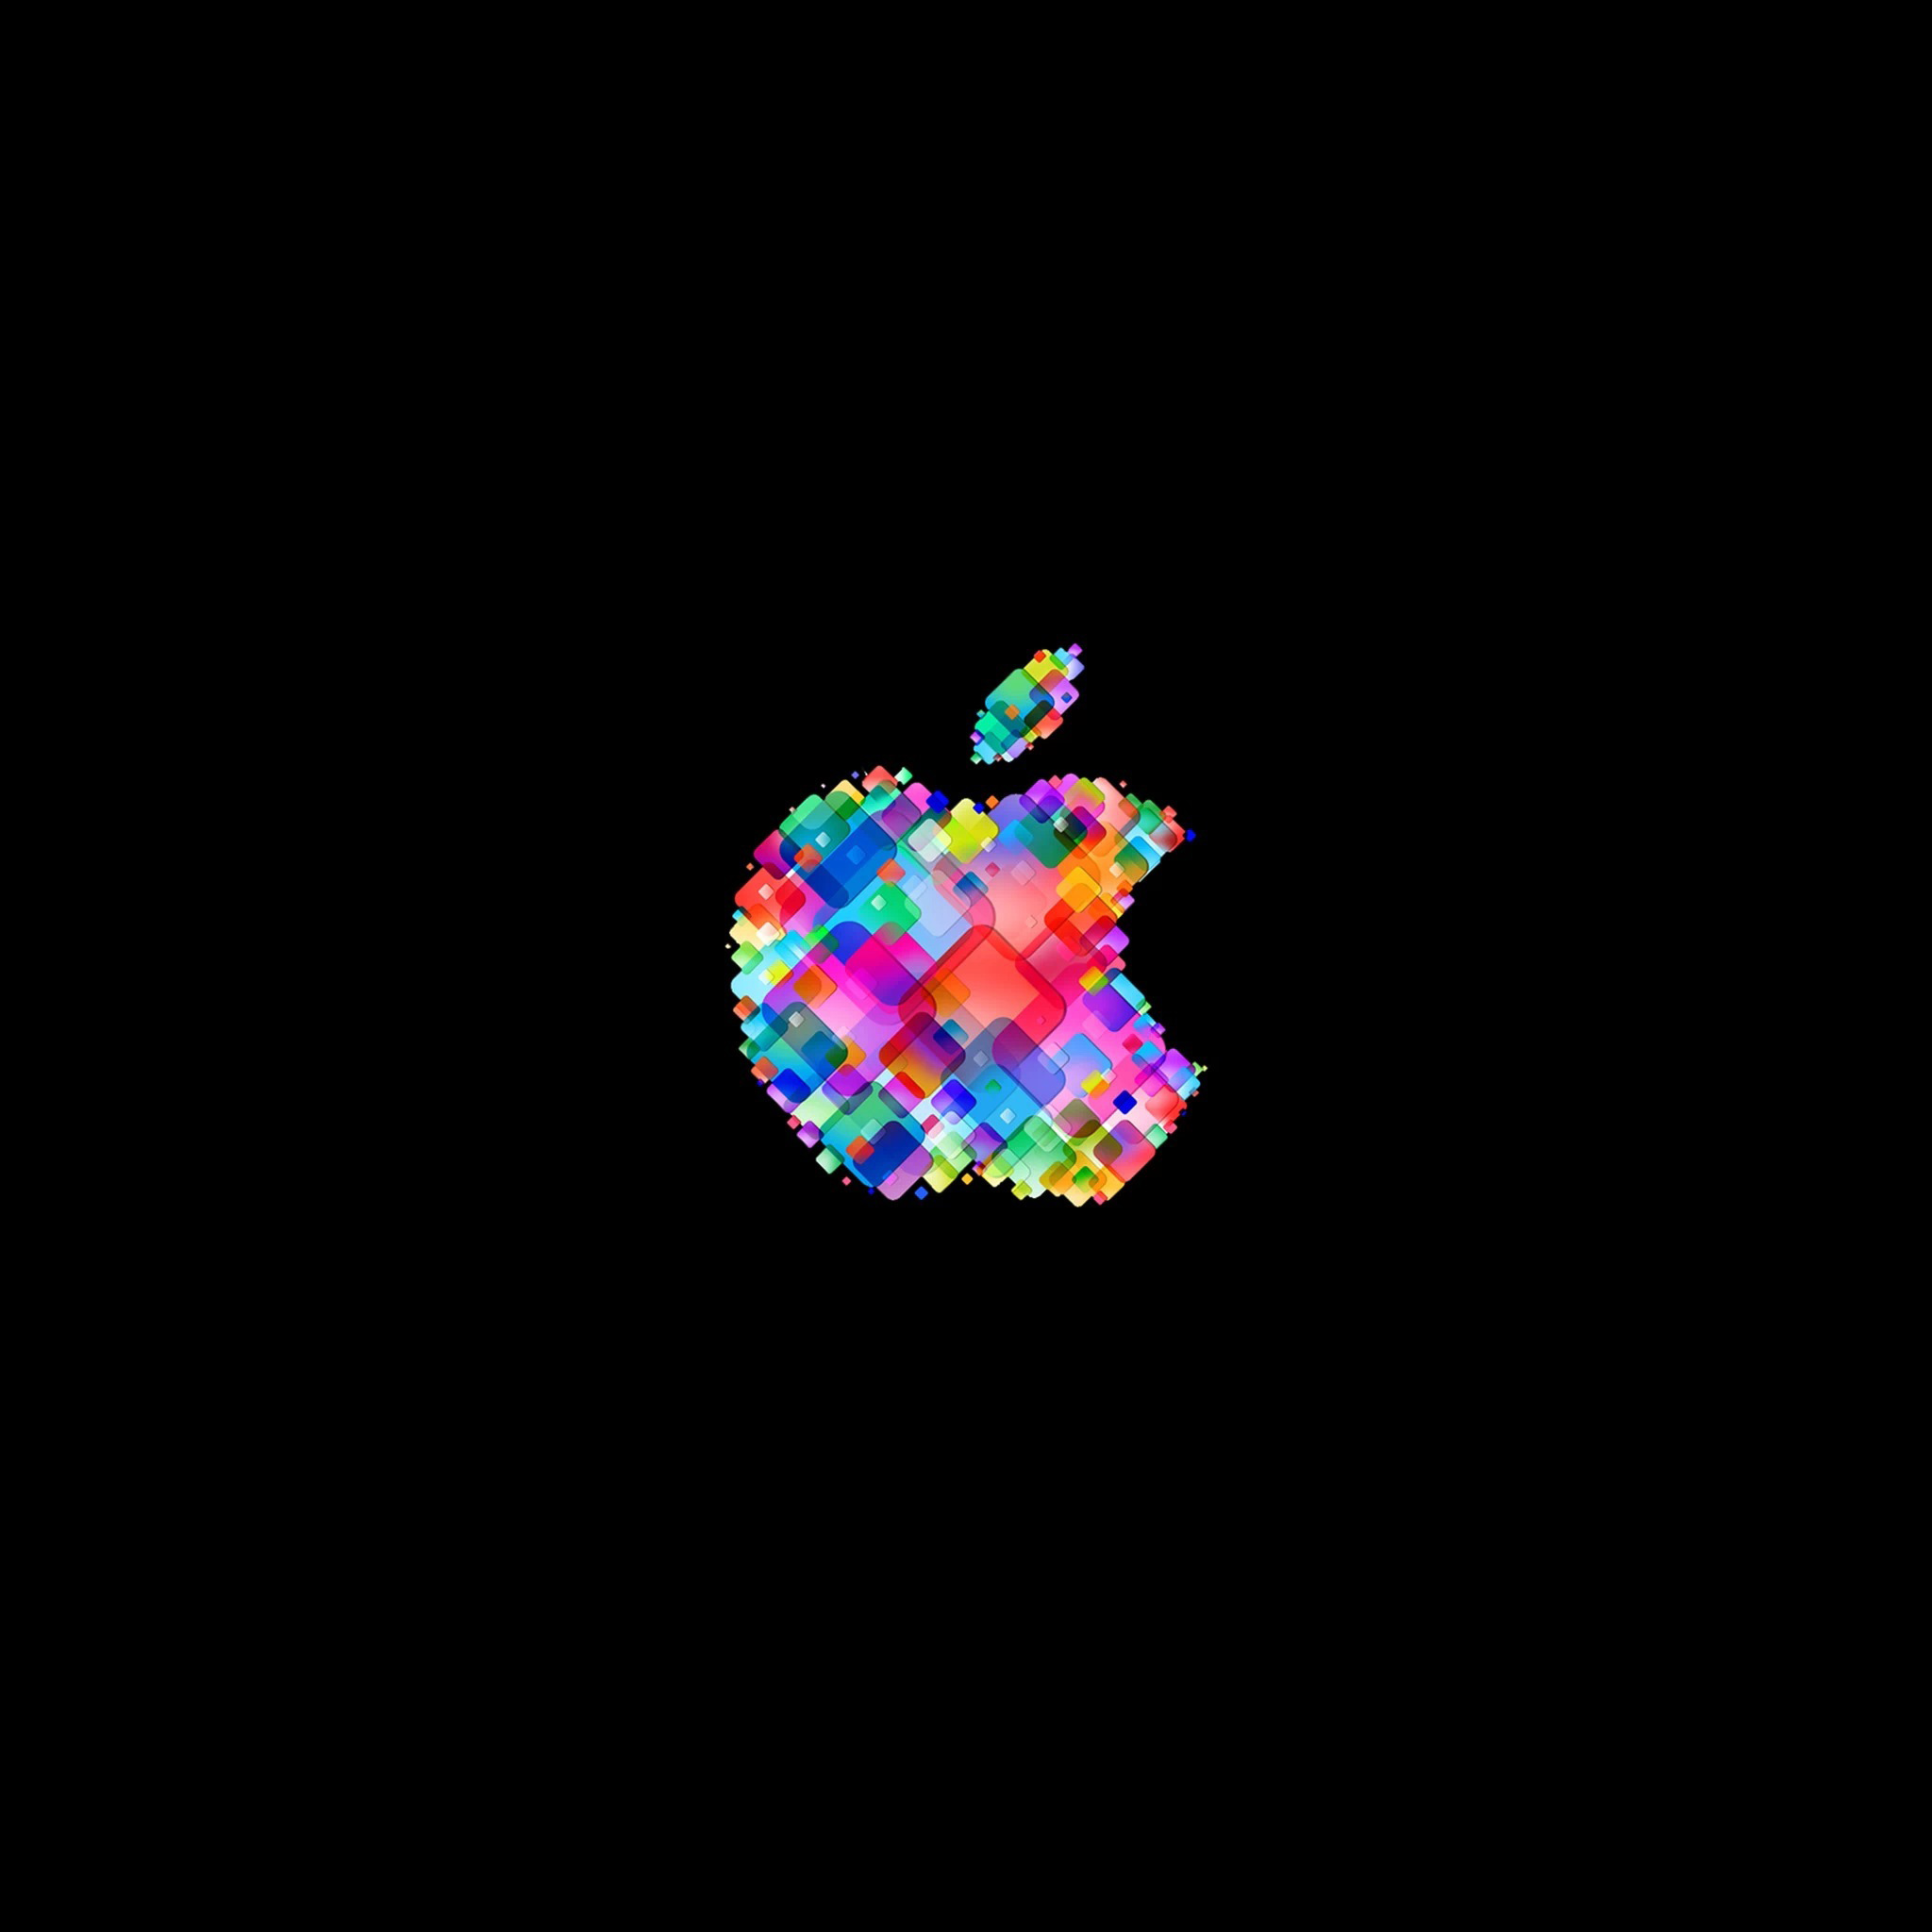 iPad Wallpapers Funky apple logo 3 Apple iPad iPad 2 iPad mini